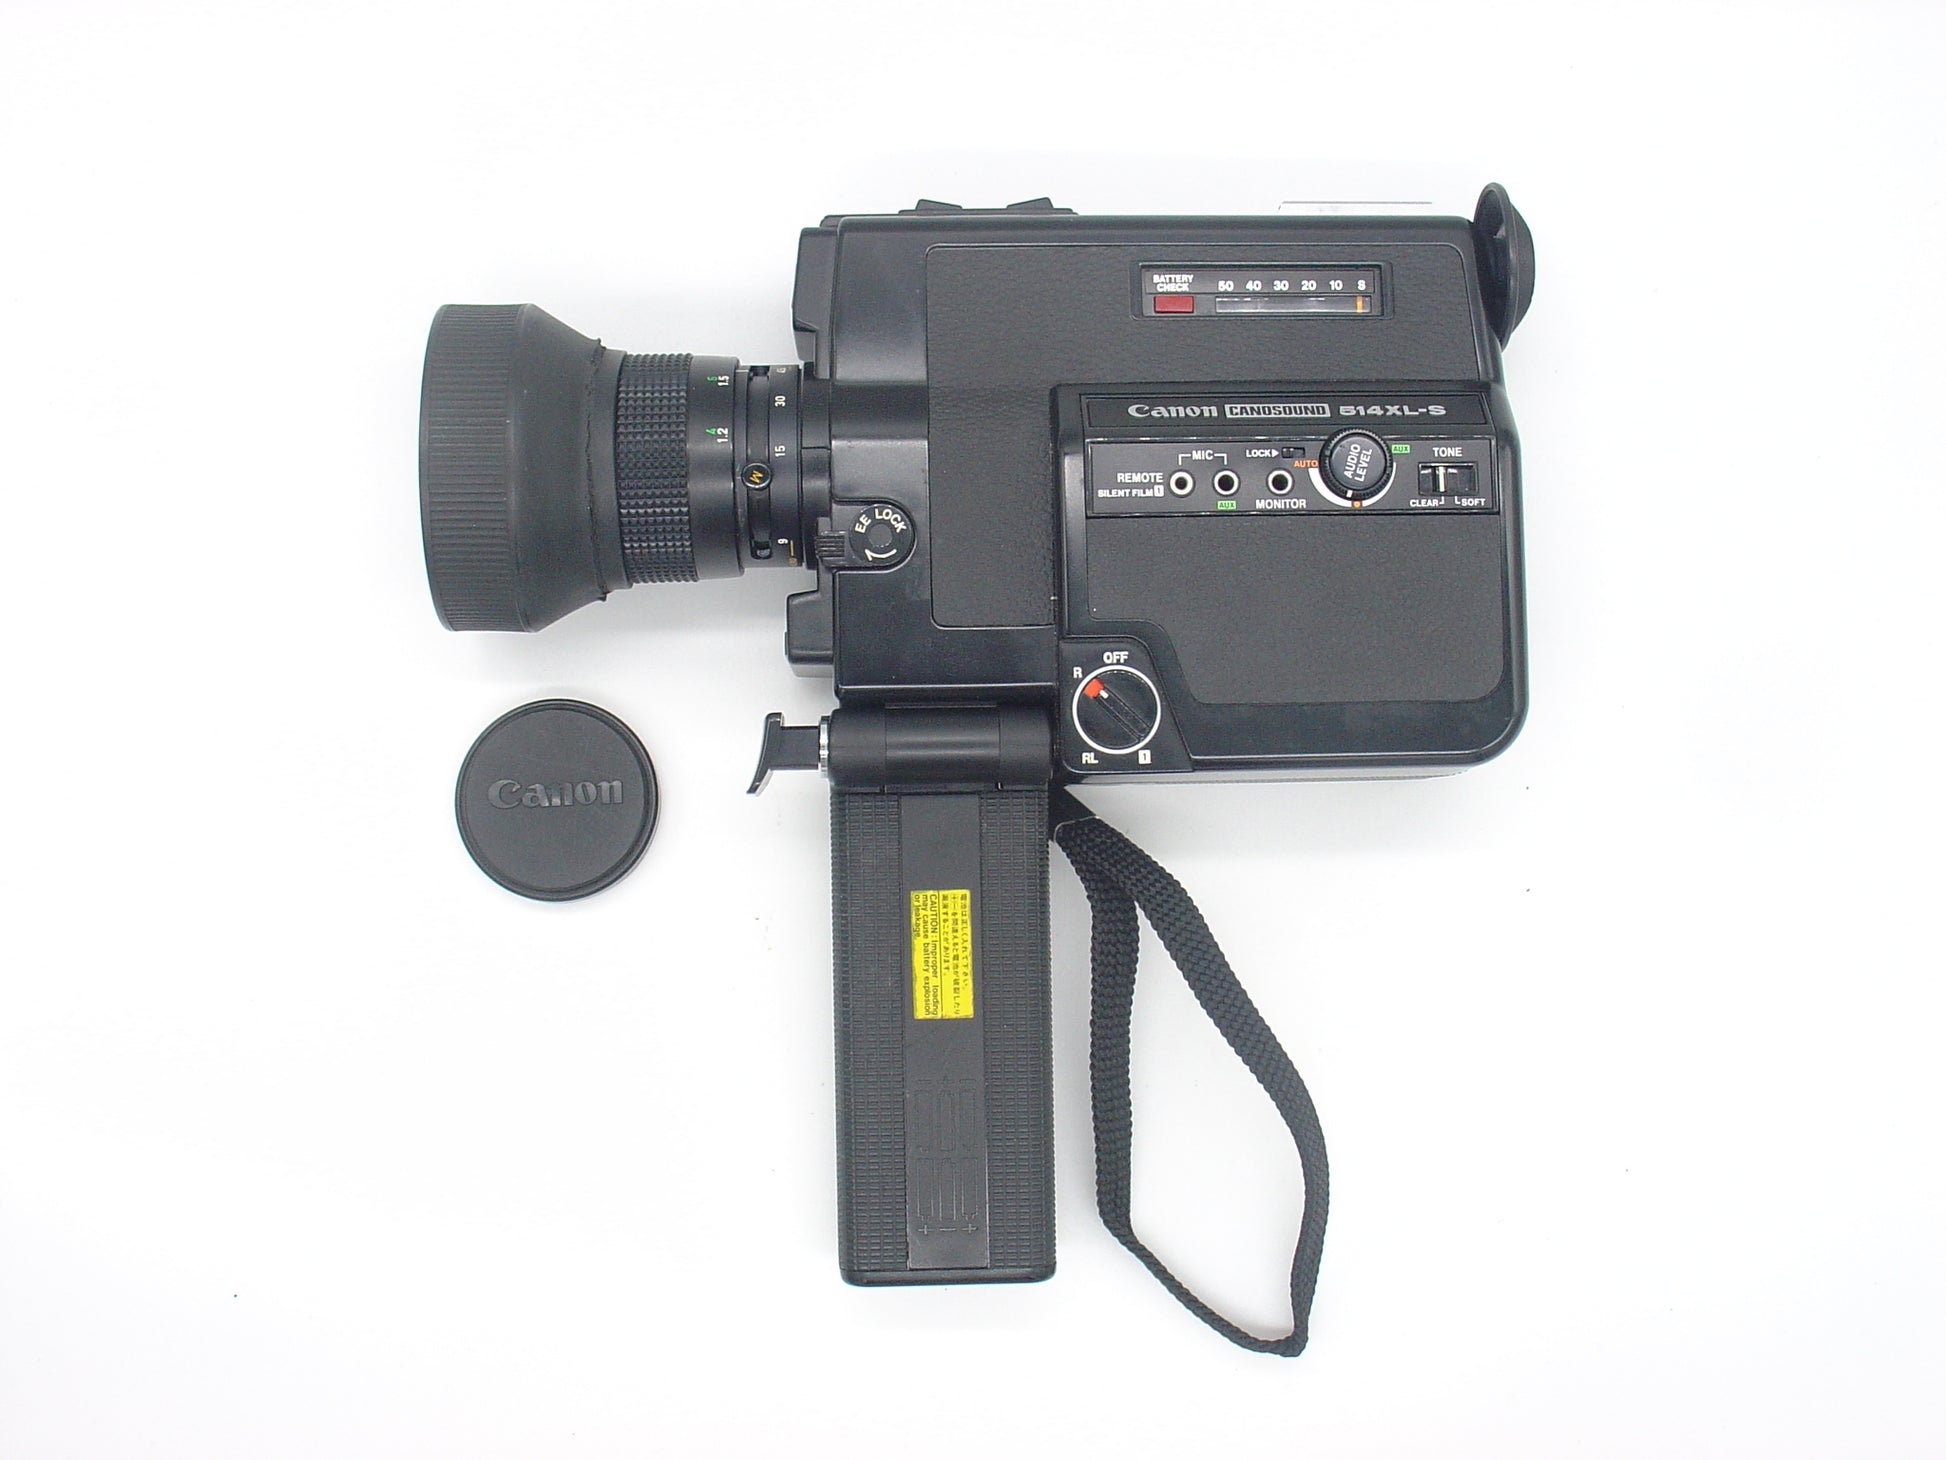 Canon 514XL-S Canosound Super 8 8mm Movie Film Camera (Untested, No power)